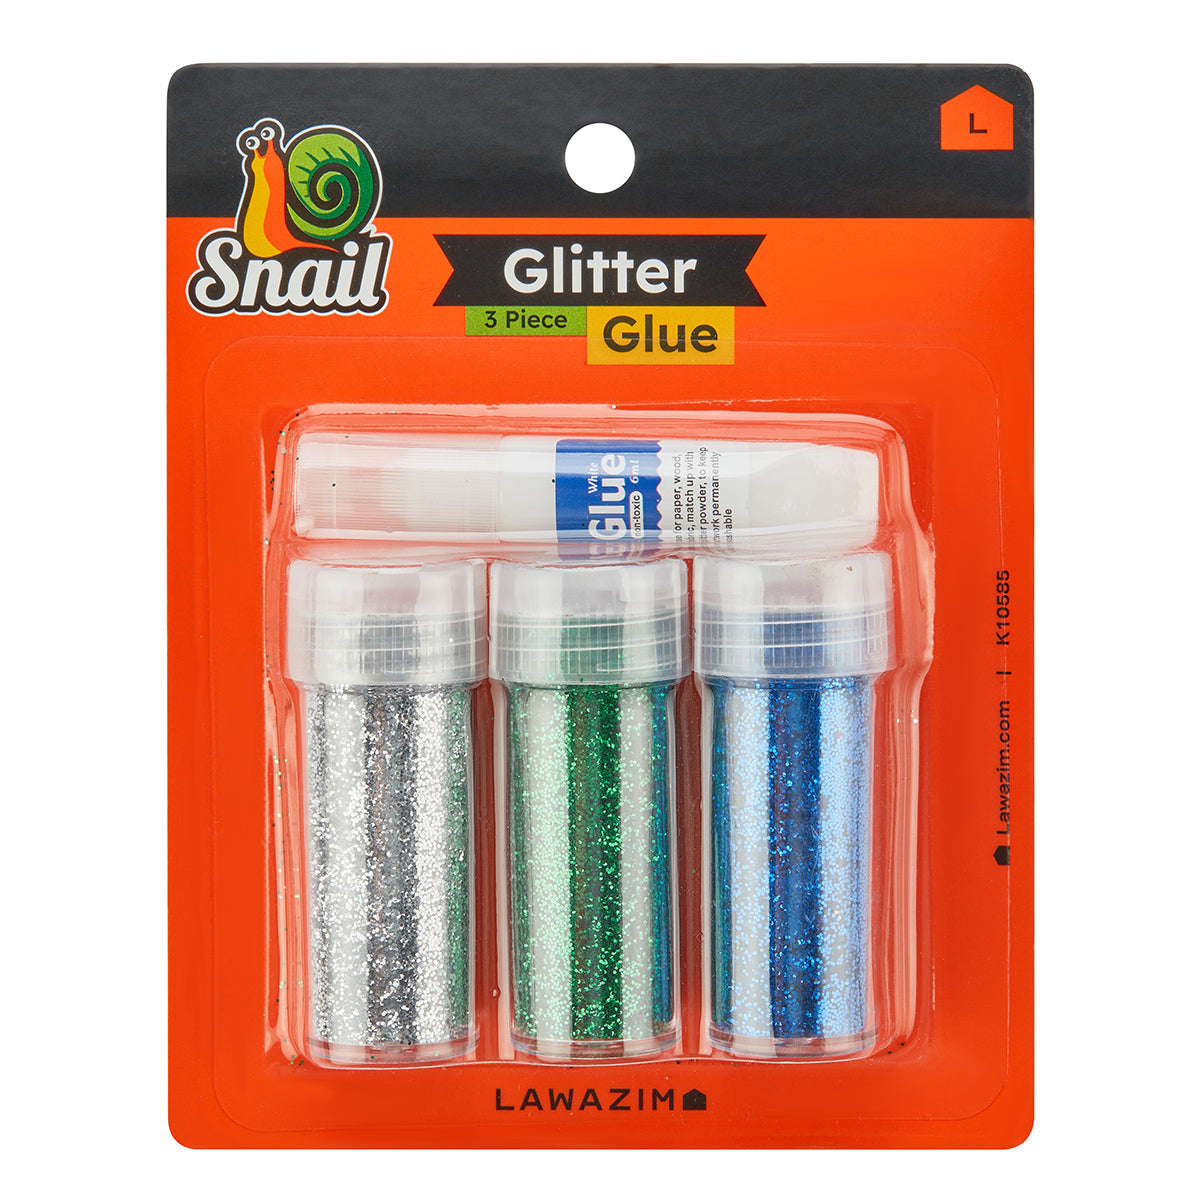 3-Piece Glitter Glue